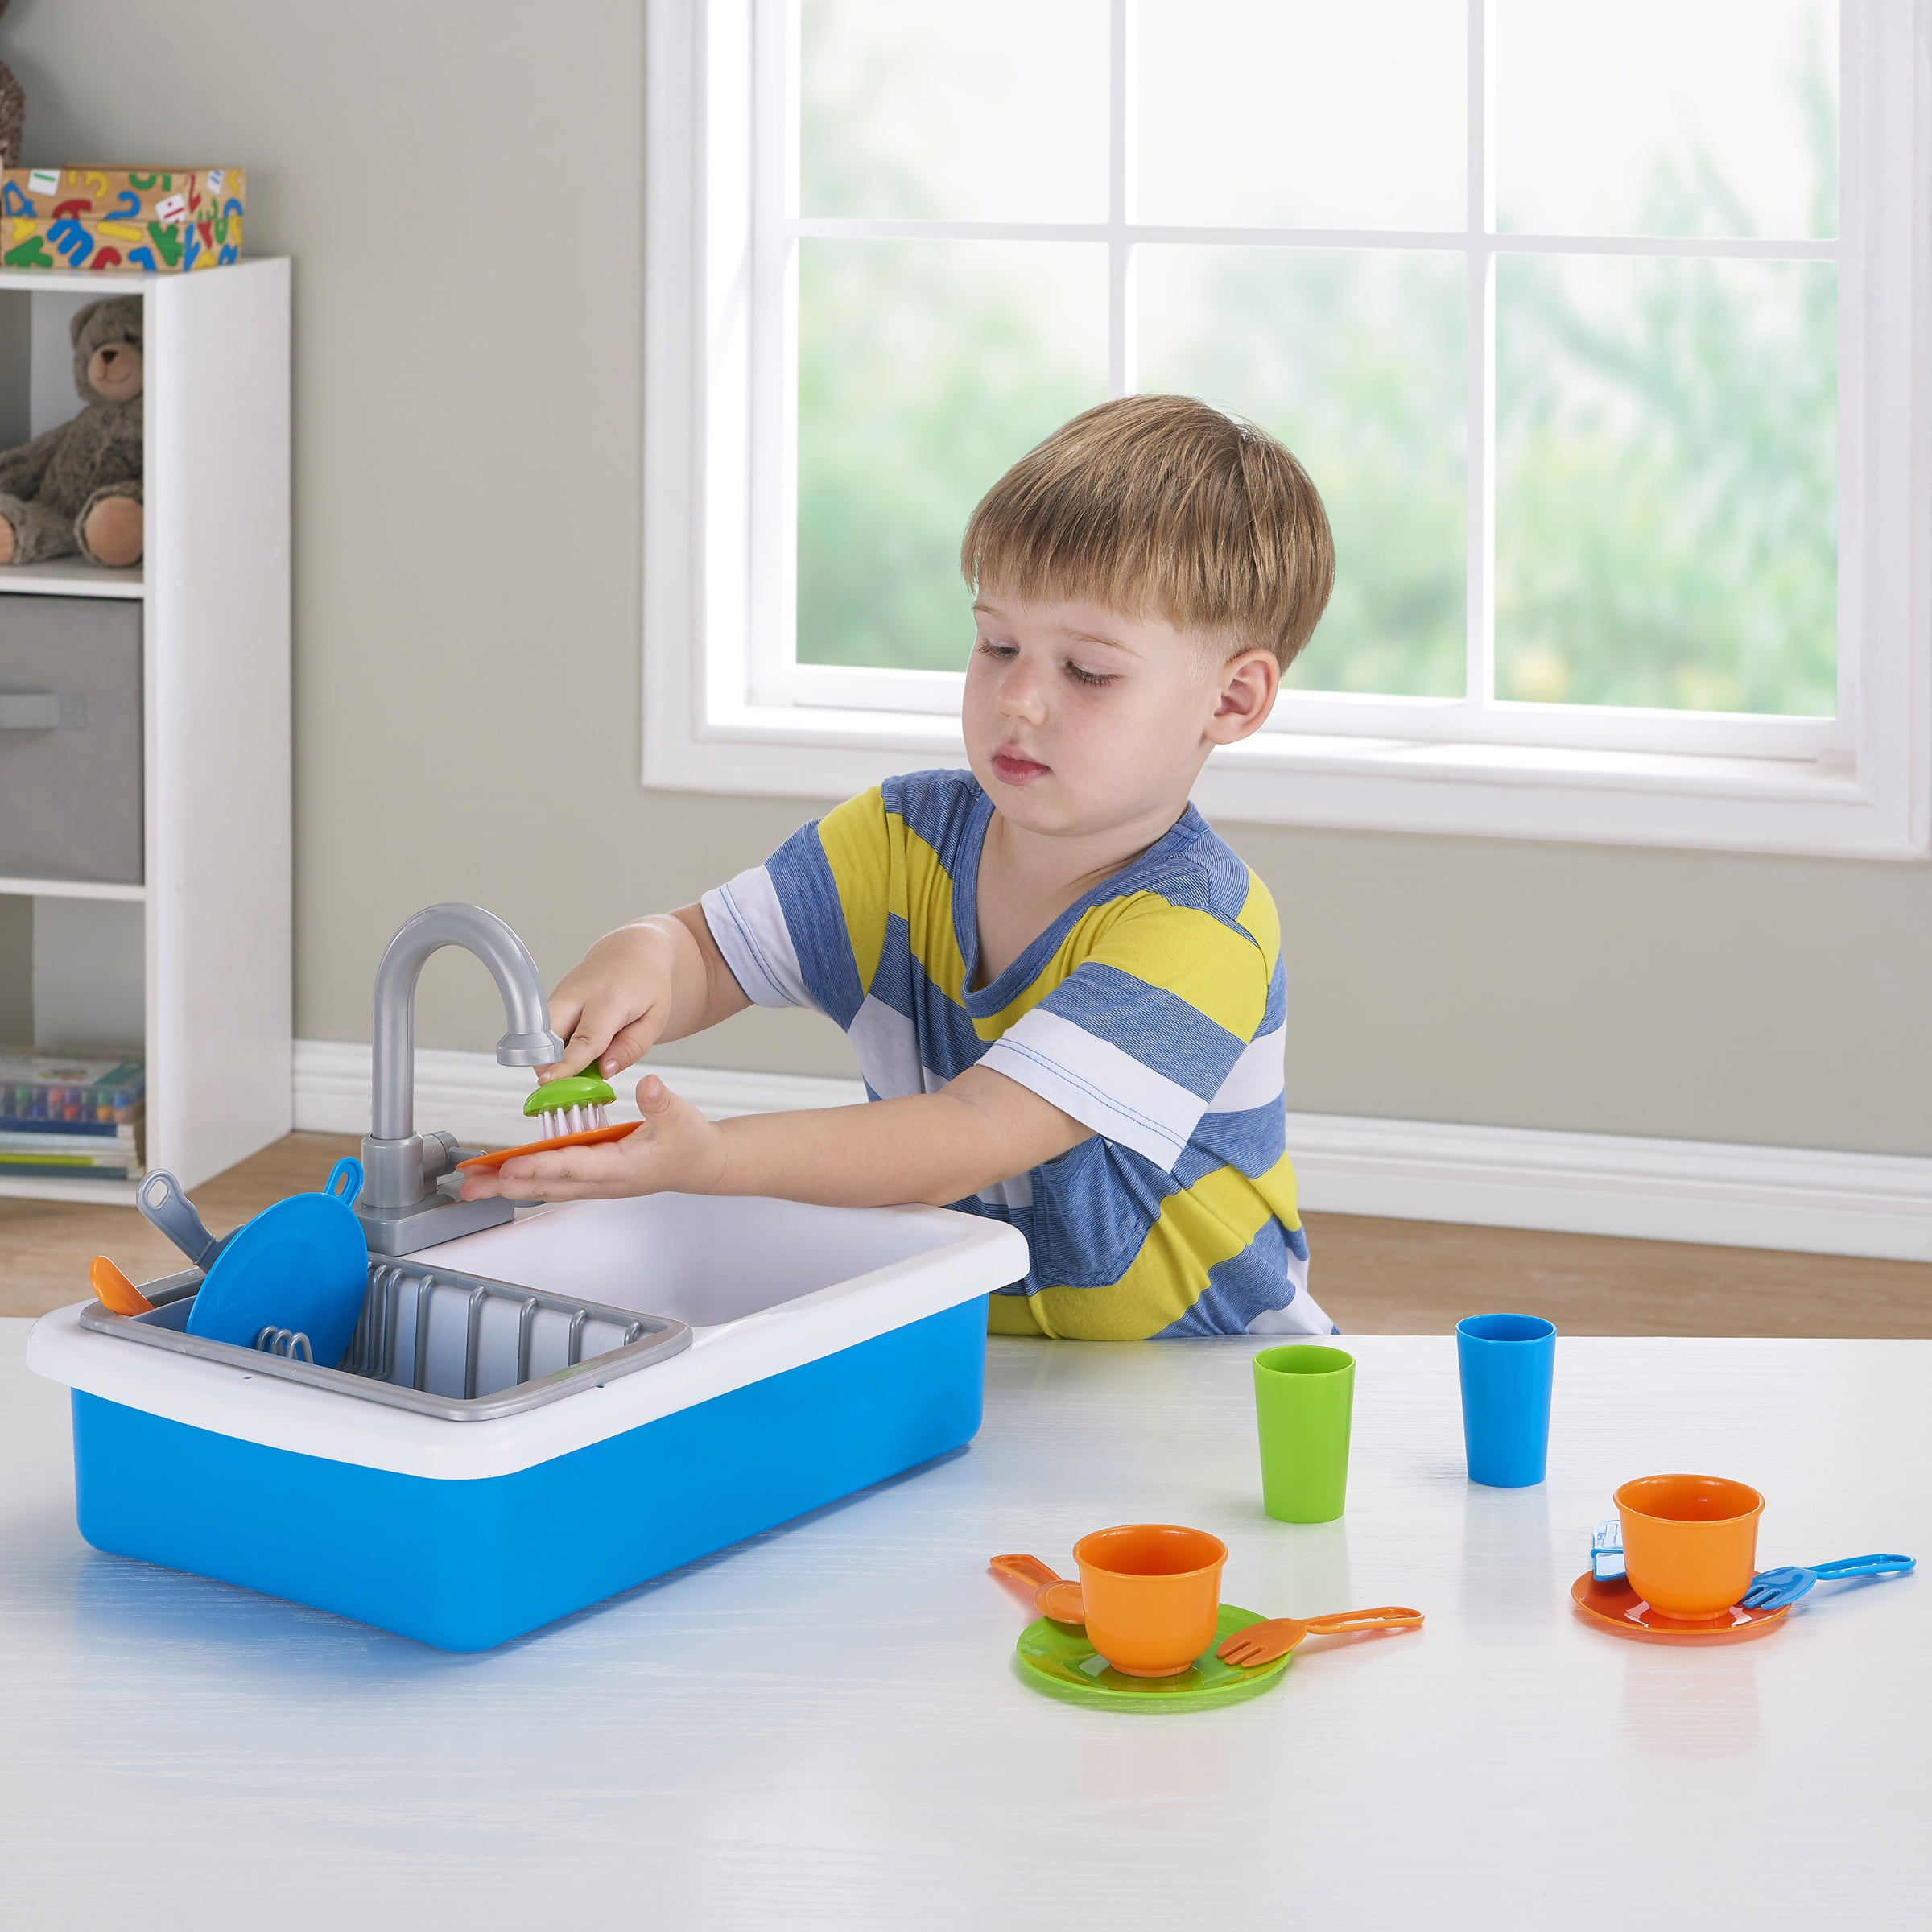 Spark Create Imagine Kitchen Sink Play Set Plastic Designed Kids Children Toy 191162036003 | eBay